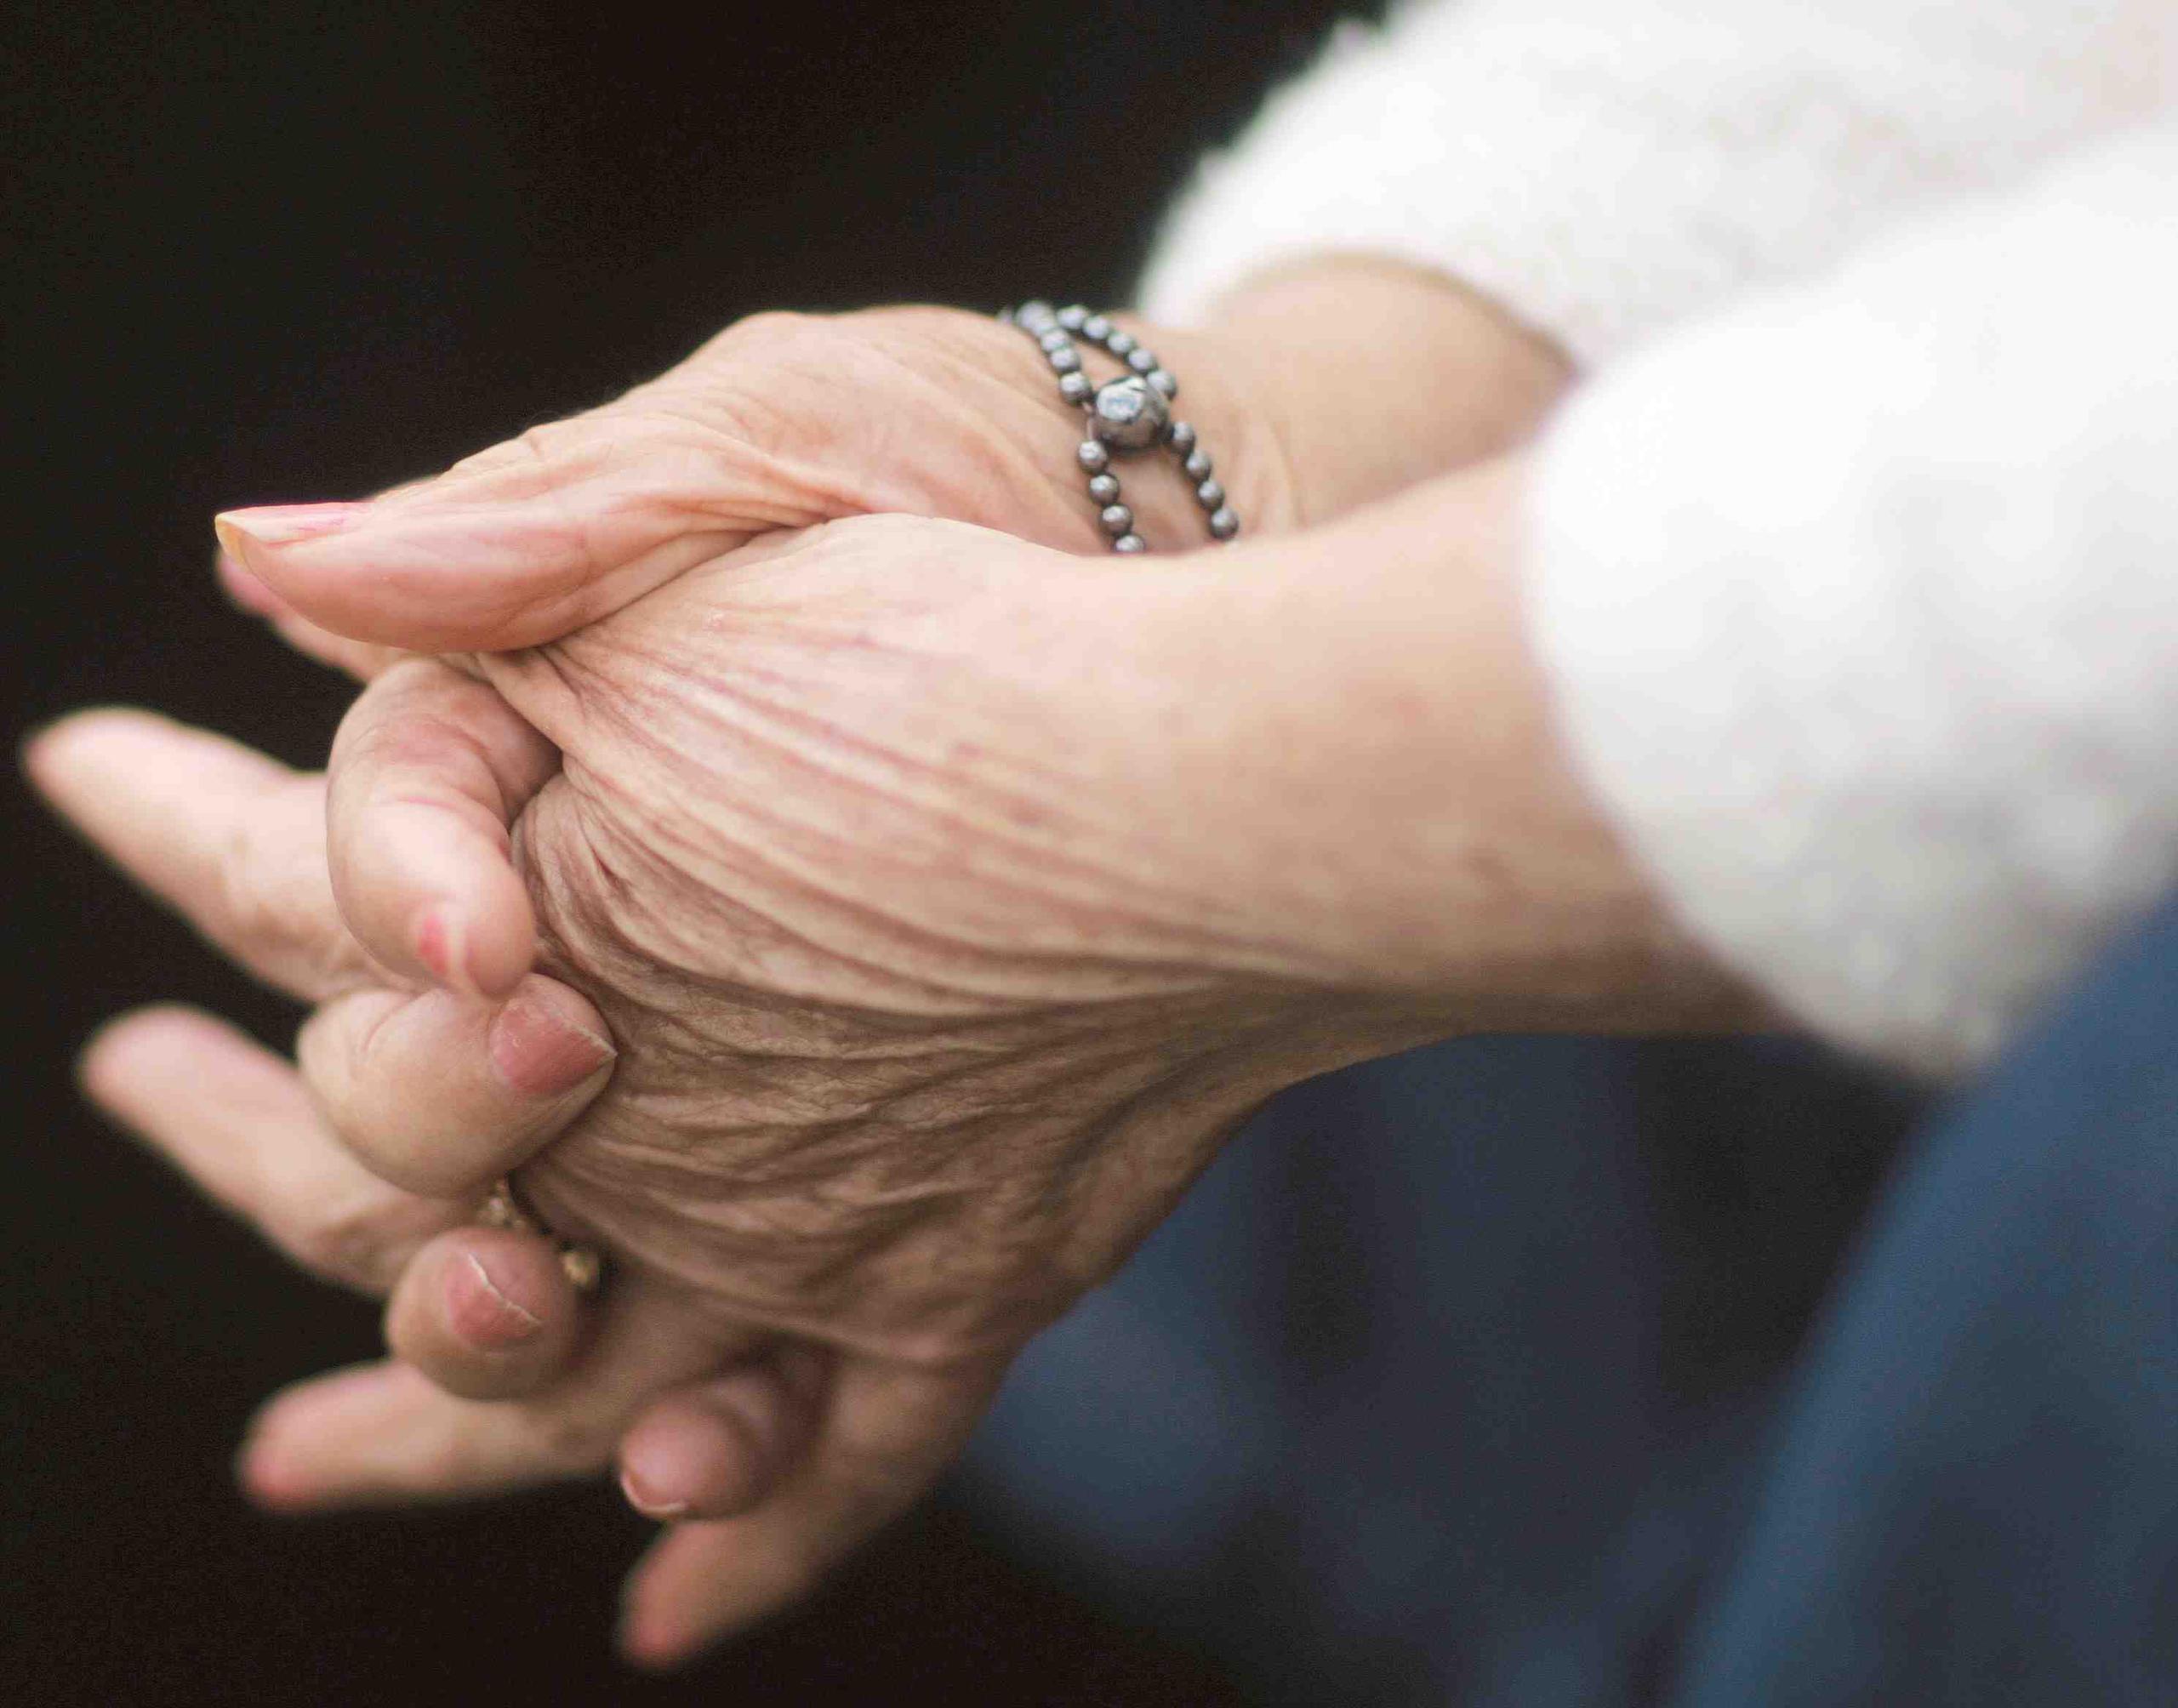 La enfermedad de Alzheimer afecta usualmente a ancianos y la cifra está creciendo conforme la población envejece.